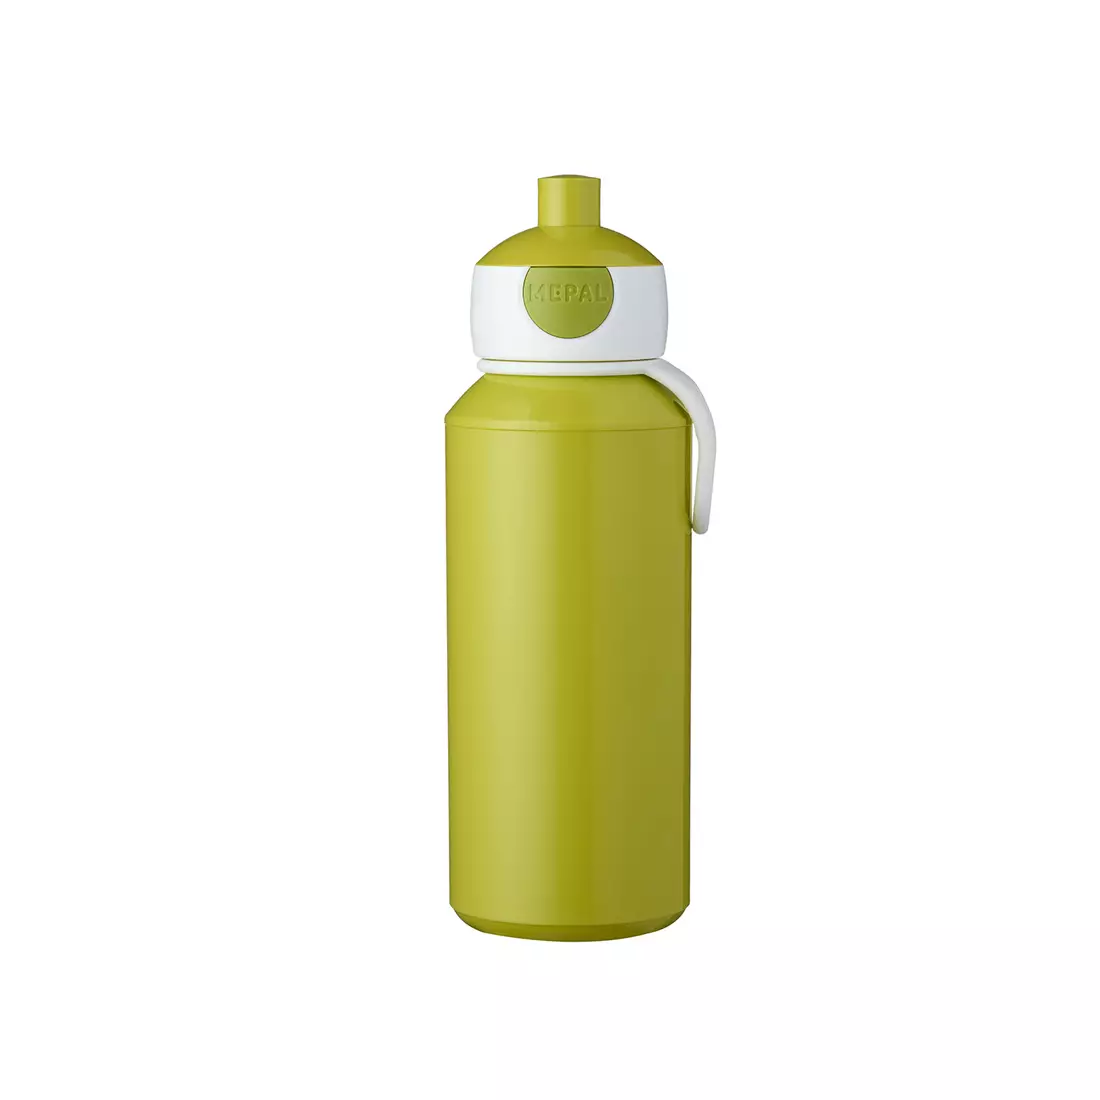 MEPAL POP-UP CAMPUS wasserflasche für kinder 400 ml, limette